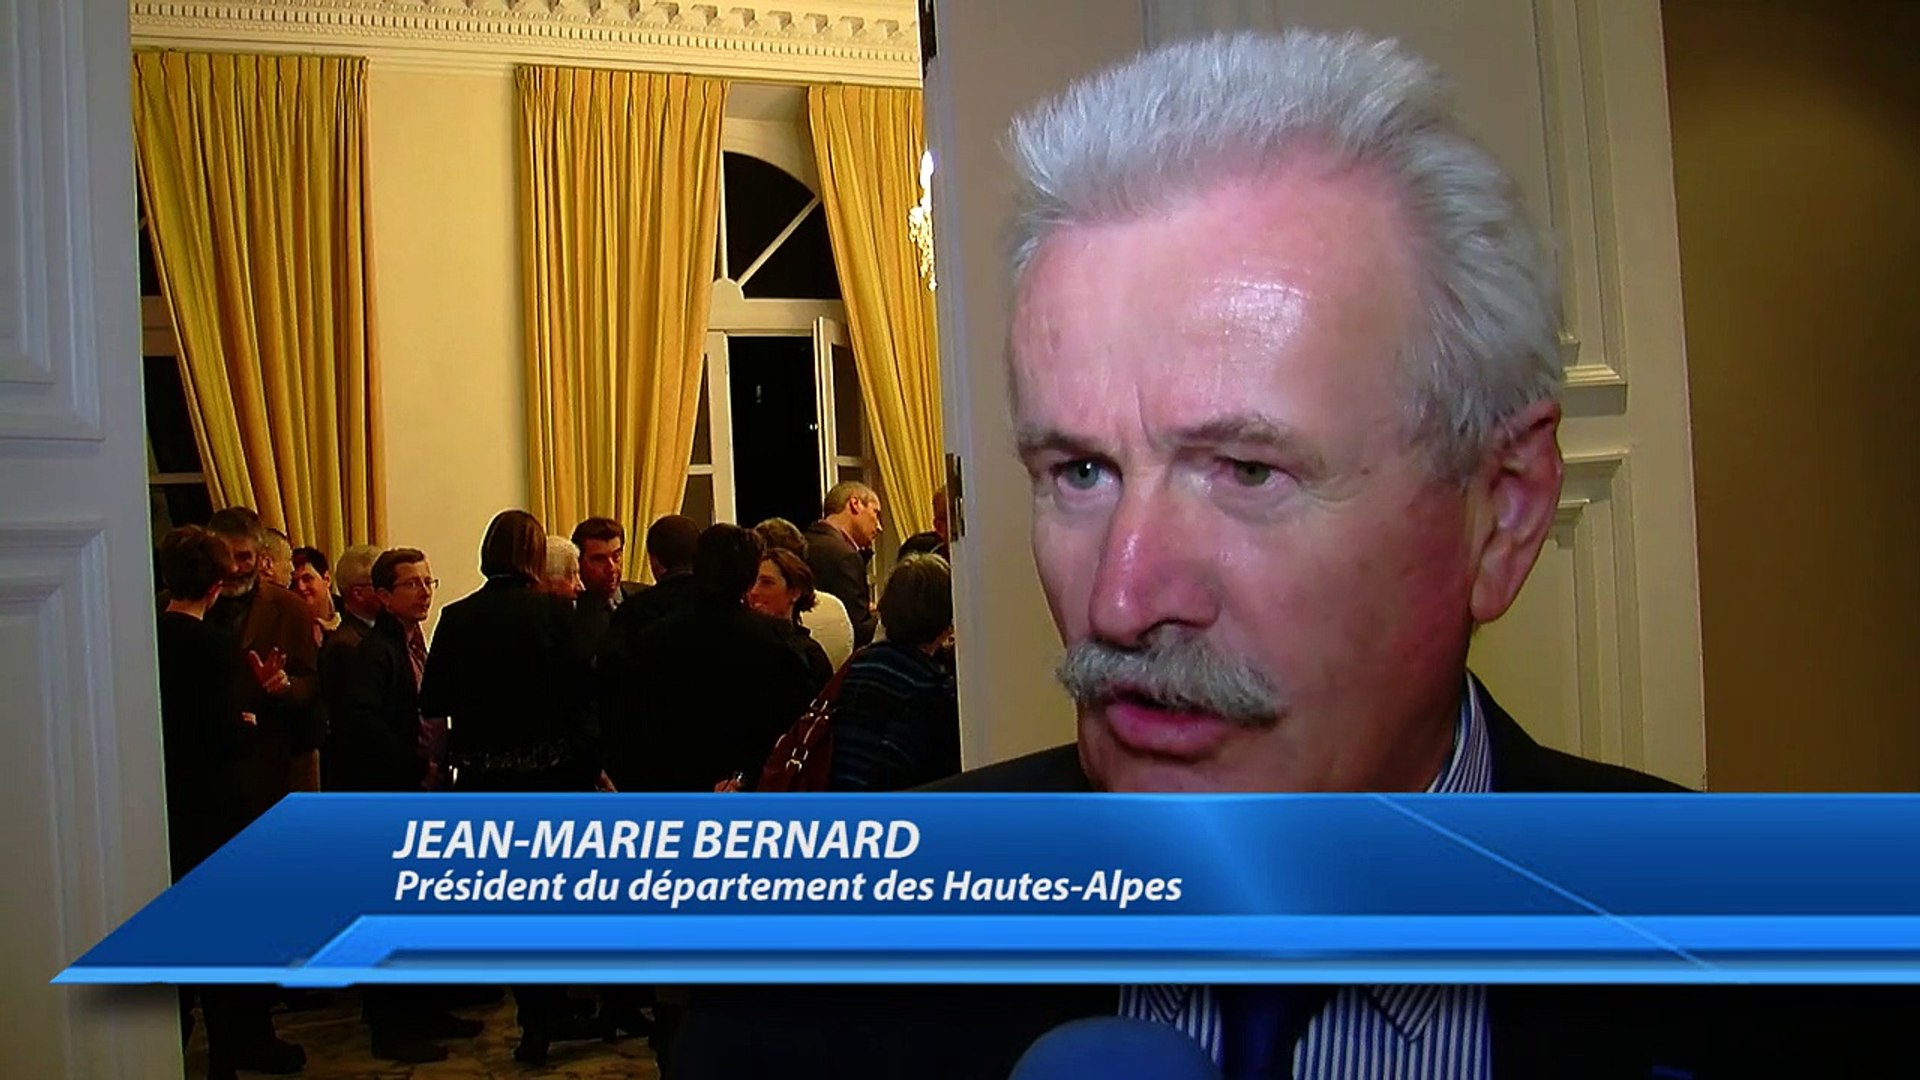 D!CI TV : Hautes-Alpes : Jean-marie Bernard fait voeu de "réduire les  dépenses du département" - Vidéo Dailymotion